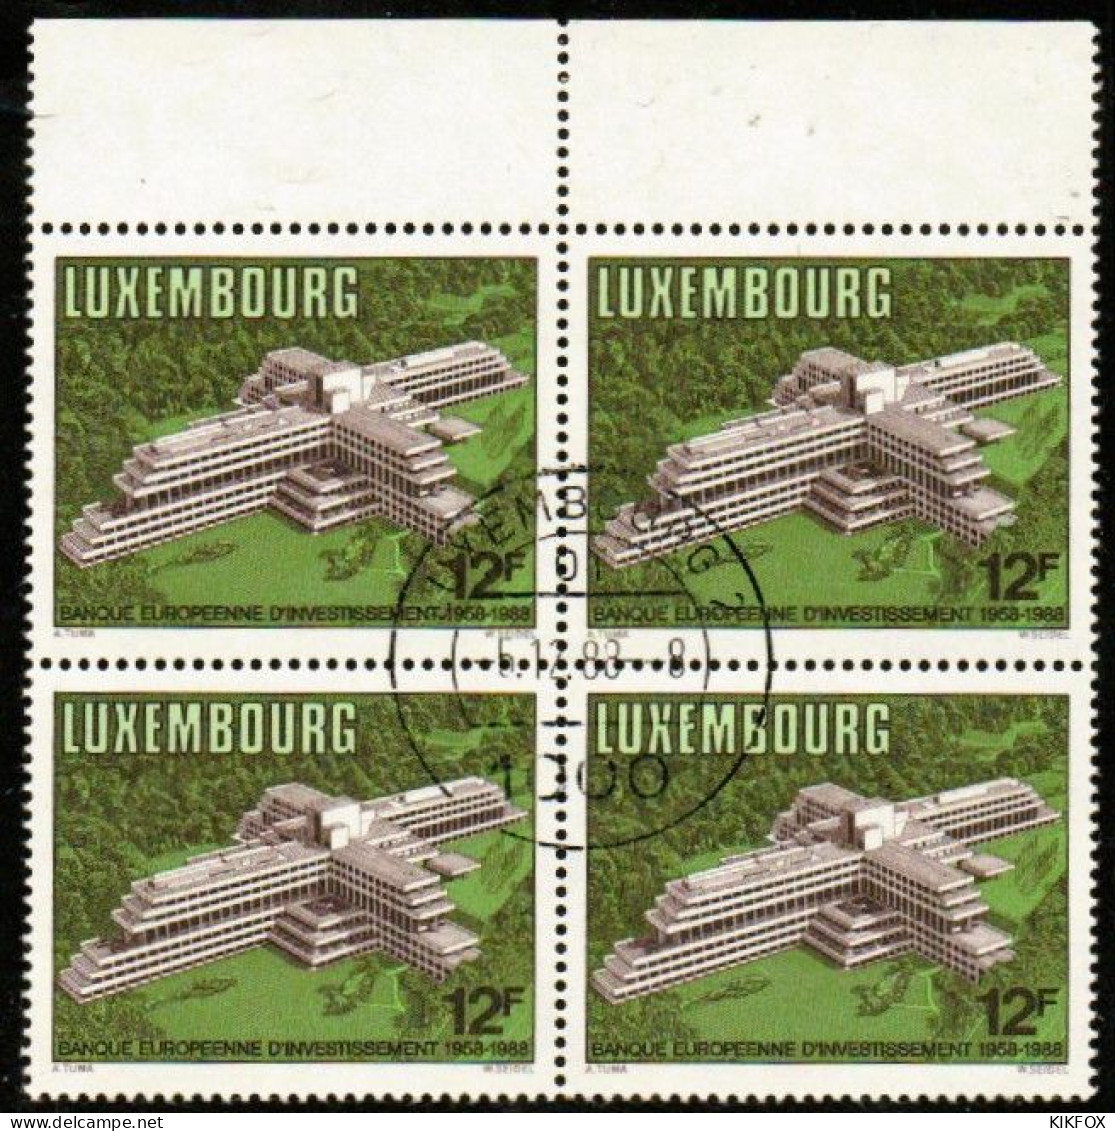 Luxembourg, Luxemburg,1988, MI 1208,YV 1158, VIERERBLOCK,30 JAHRE EUROPÄISCHE INVESTITIONSBANK (EIB),GESTEMPELT,OBLITERE - Used Stamps